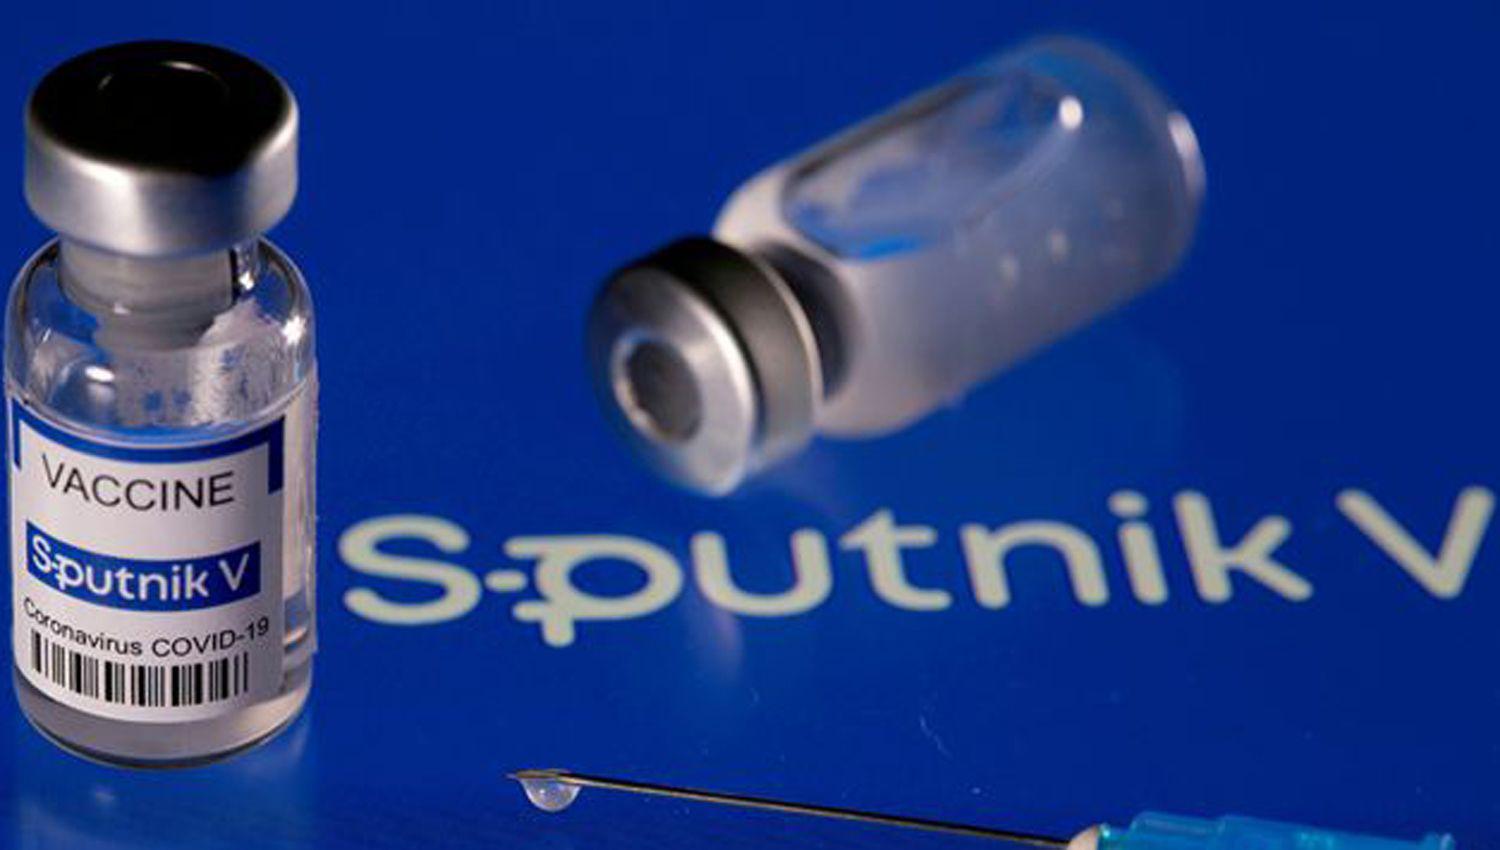 Los anticuerpos que produce la Sputnik V aumentan despueacutes de seis meses de aplicada la vacuna